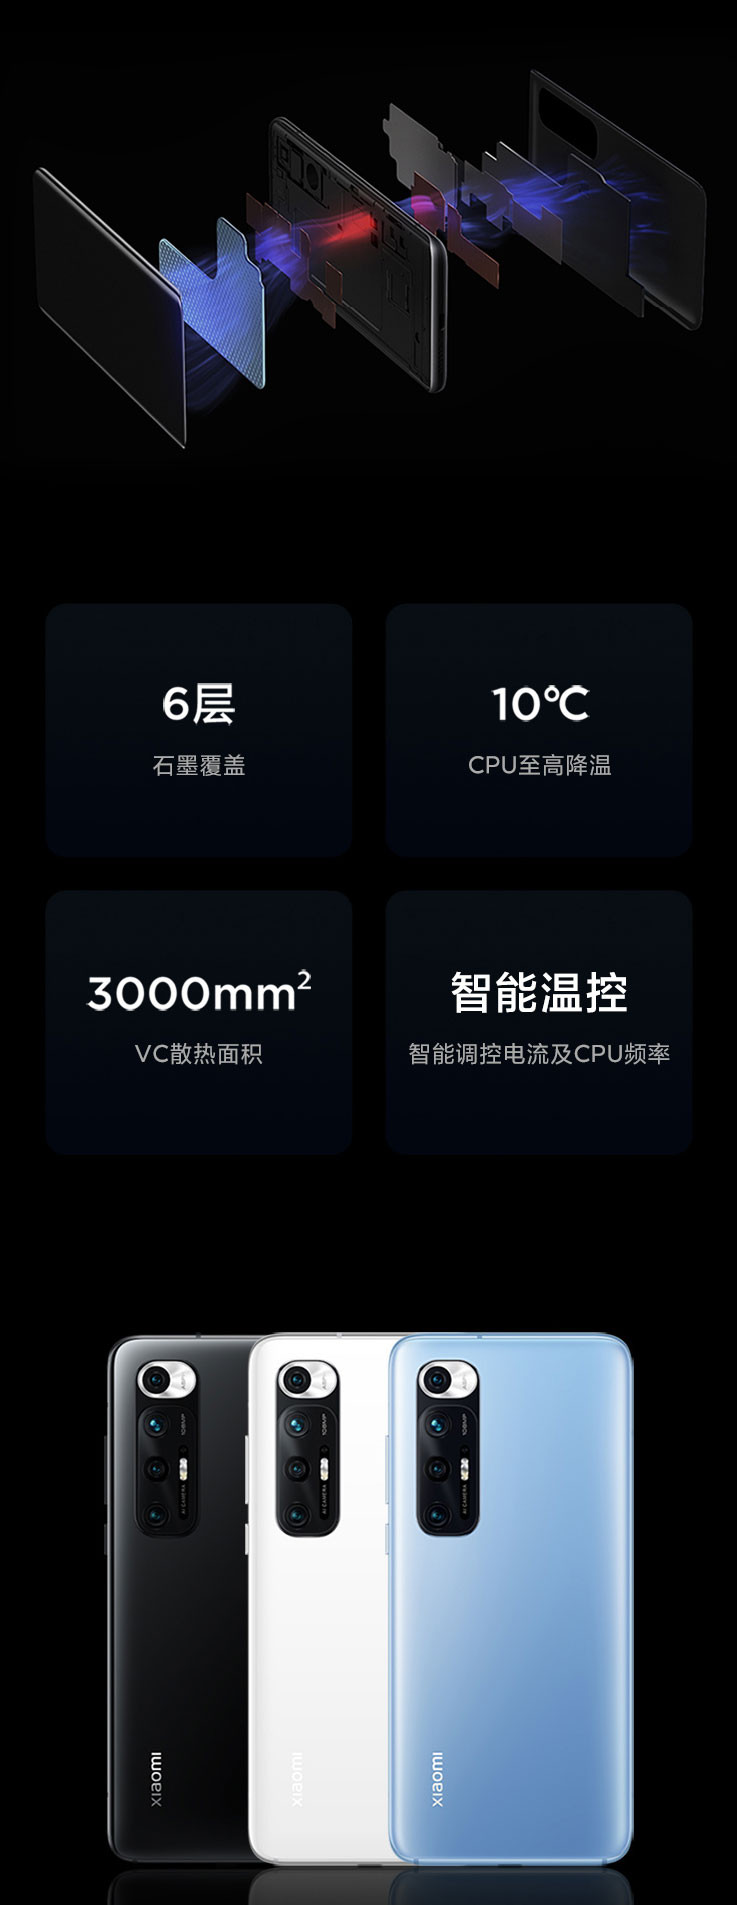 小米/MIUI 10S 骁龙870 5G手机 全网通 套装版